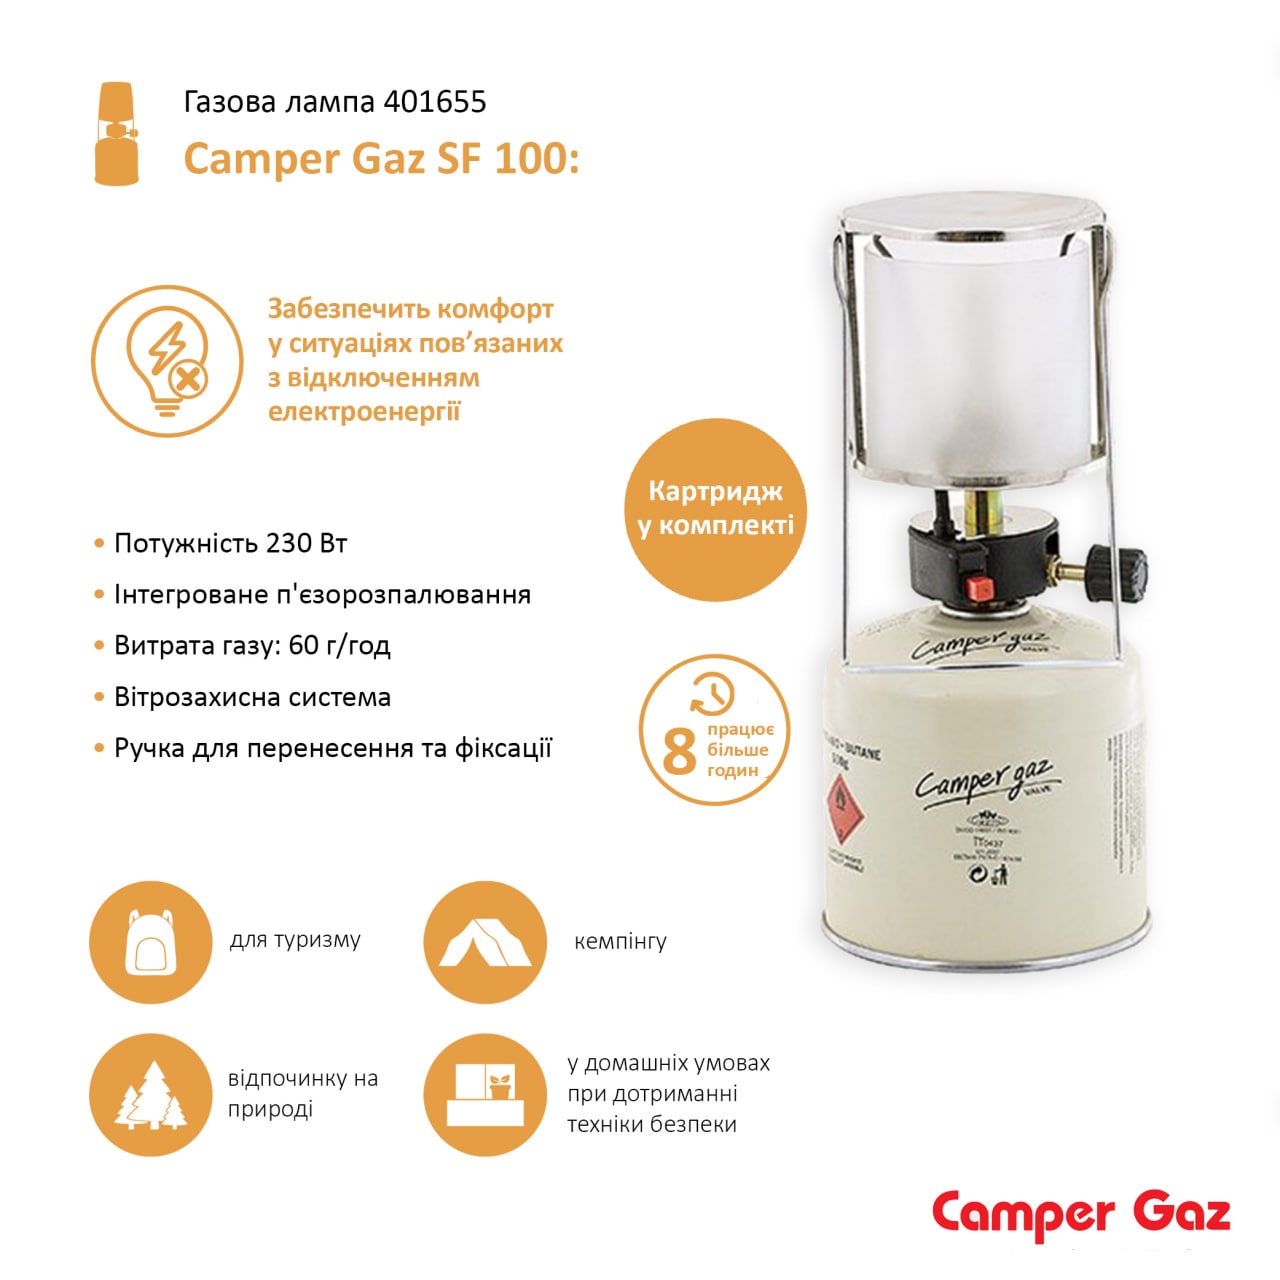 Портативная газовая лампа Camper Gaz SF100, пьєзо, 230 Вт (401655) - фото 2